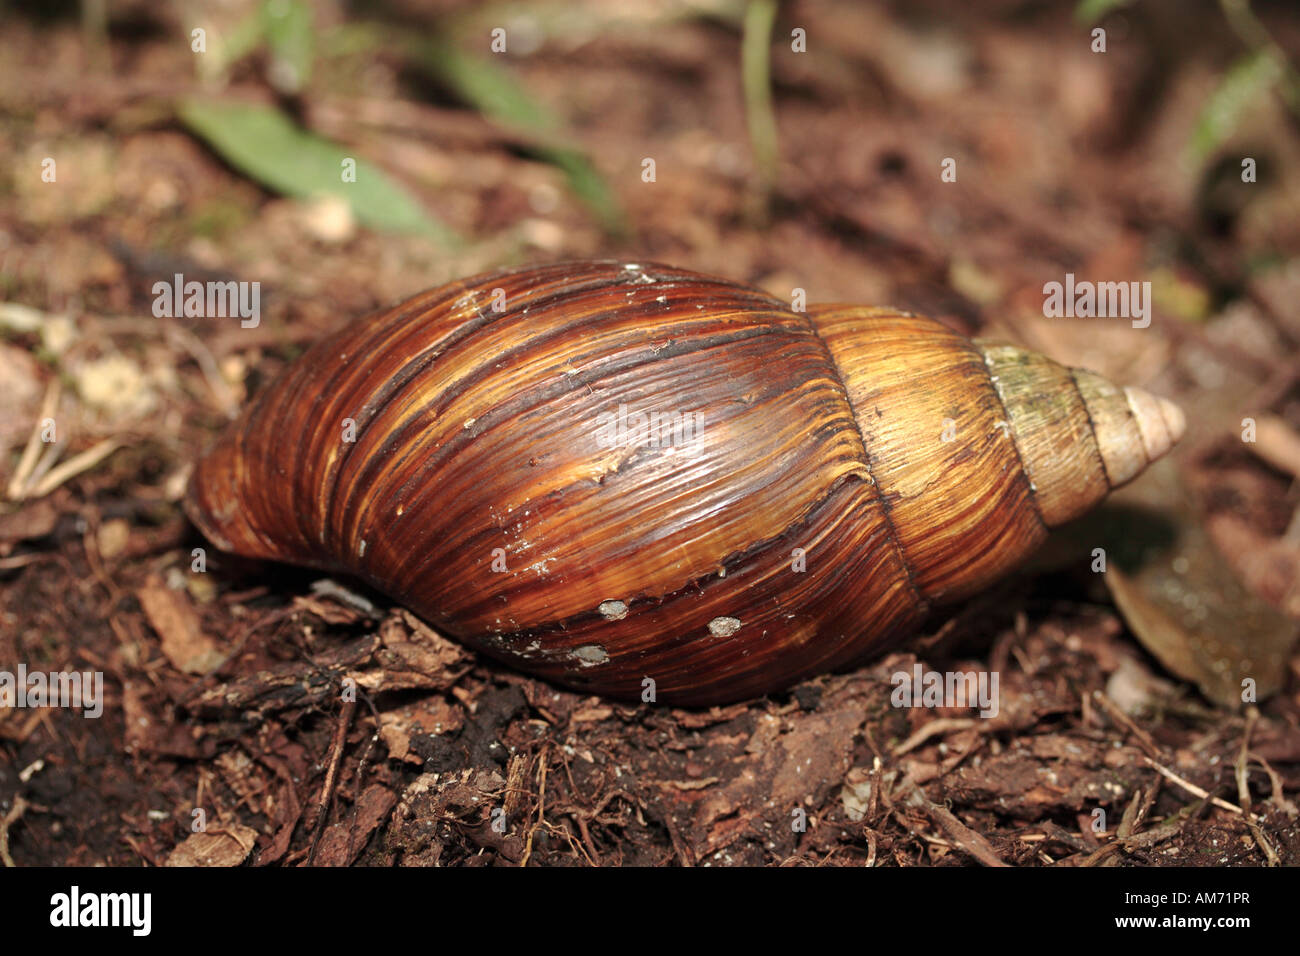 Giant Land Snail Stock Photo